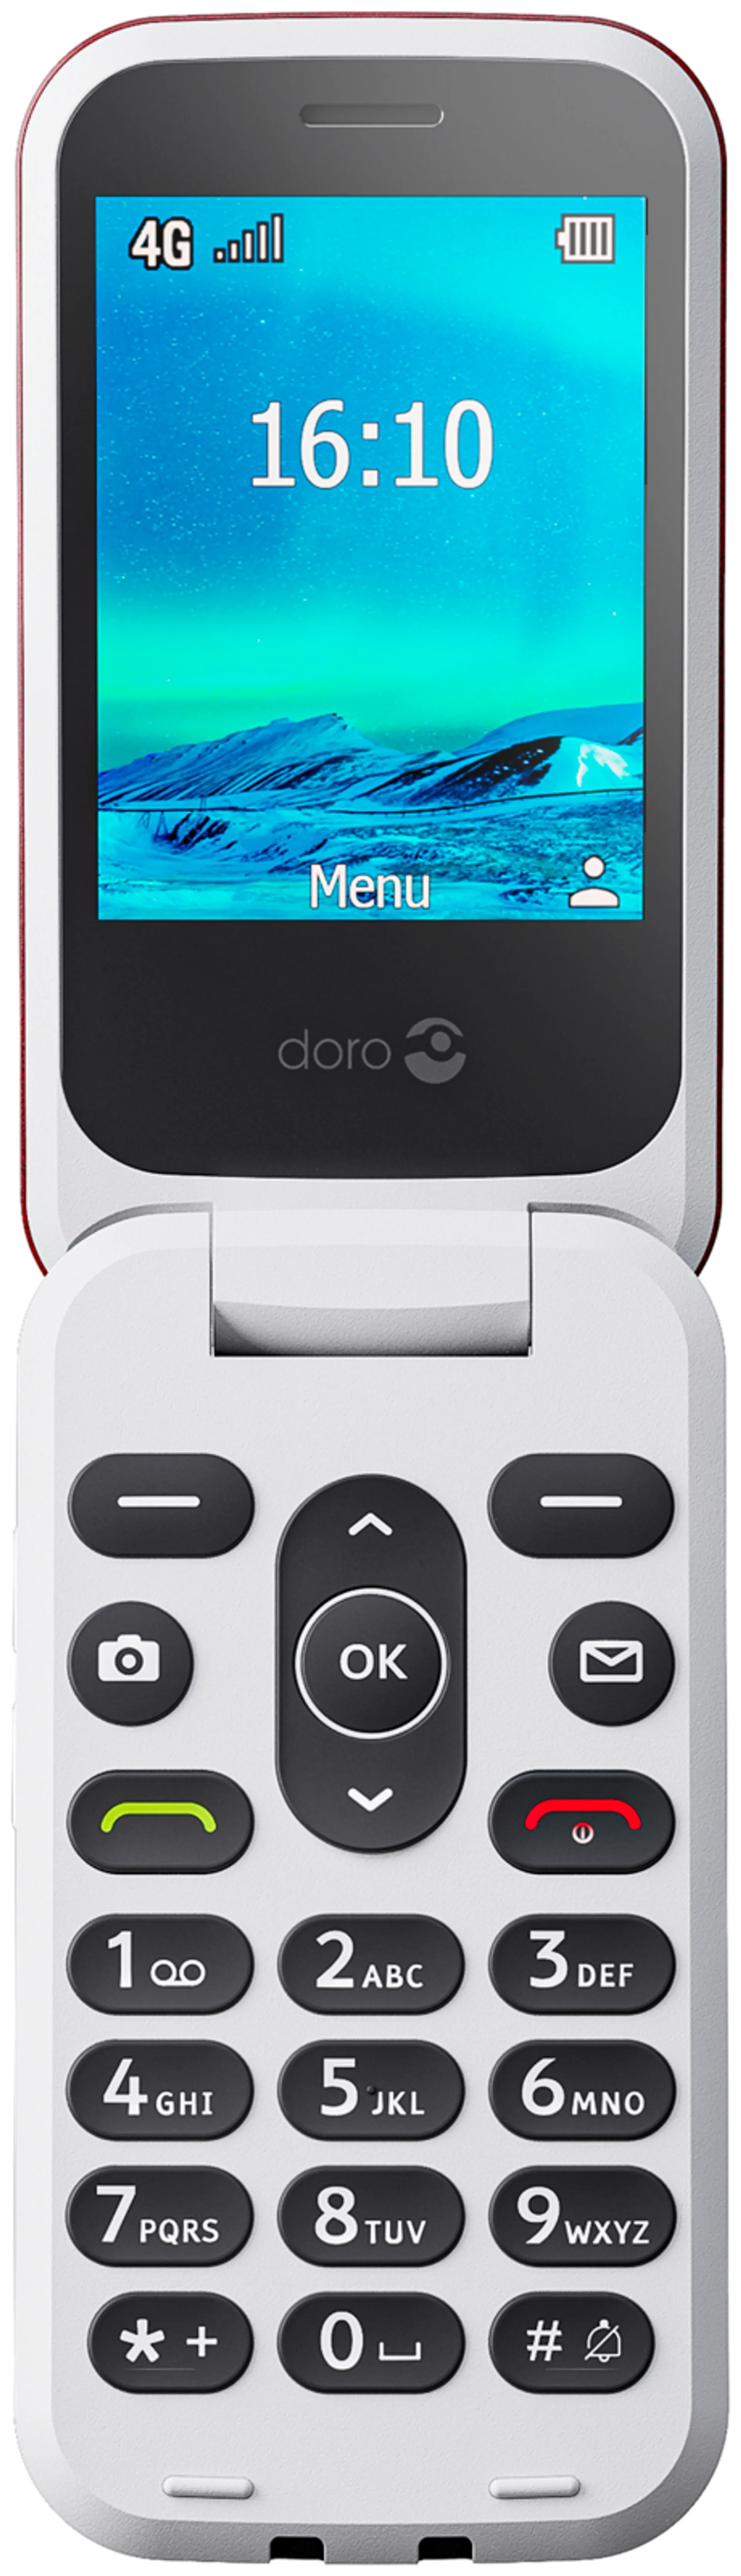 Doro 2821 4G matkapuhelin Pun/Valk - 7